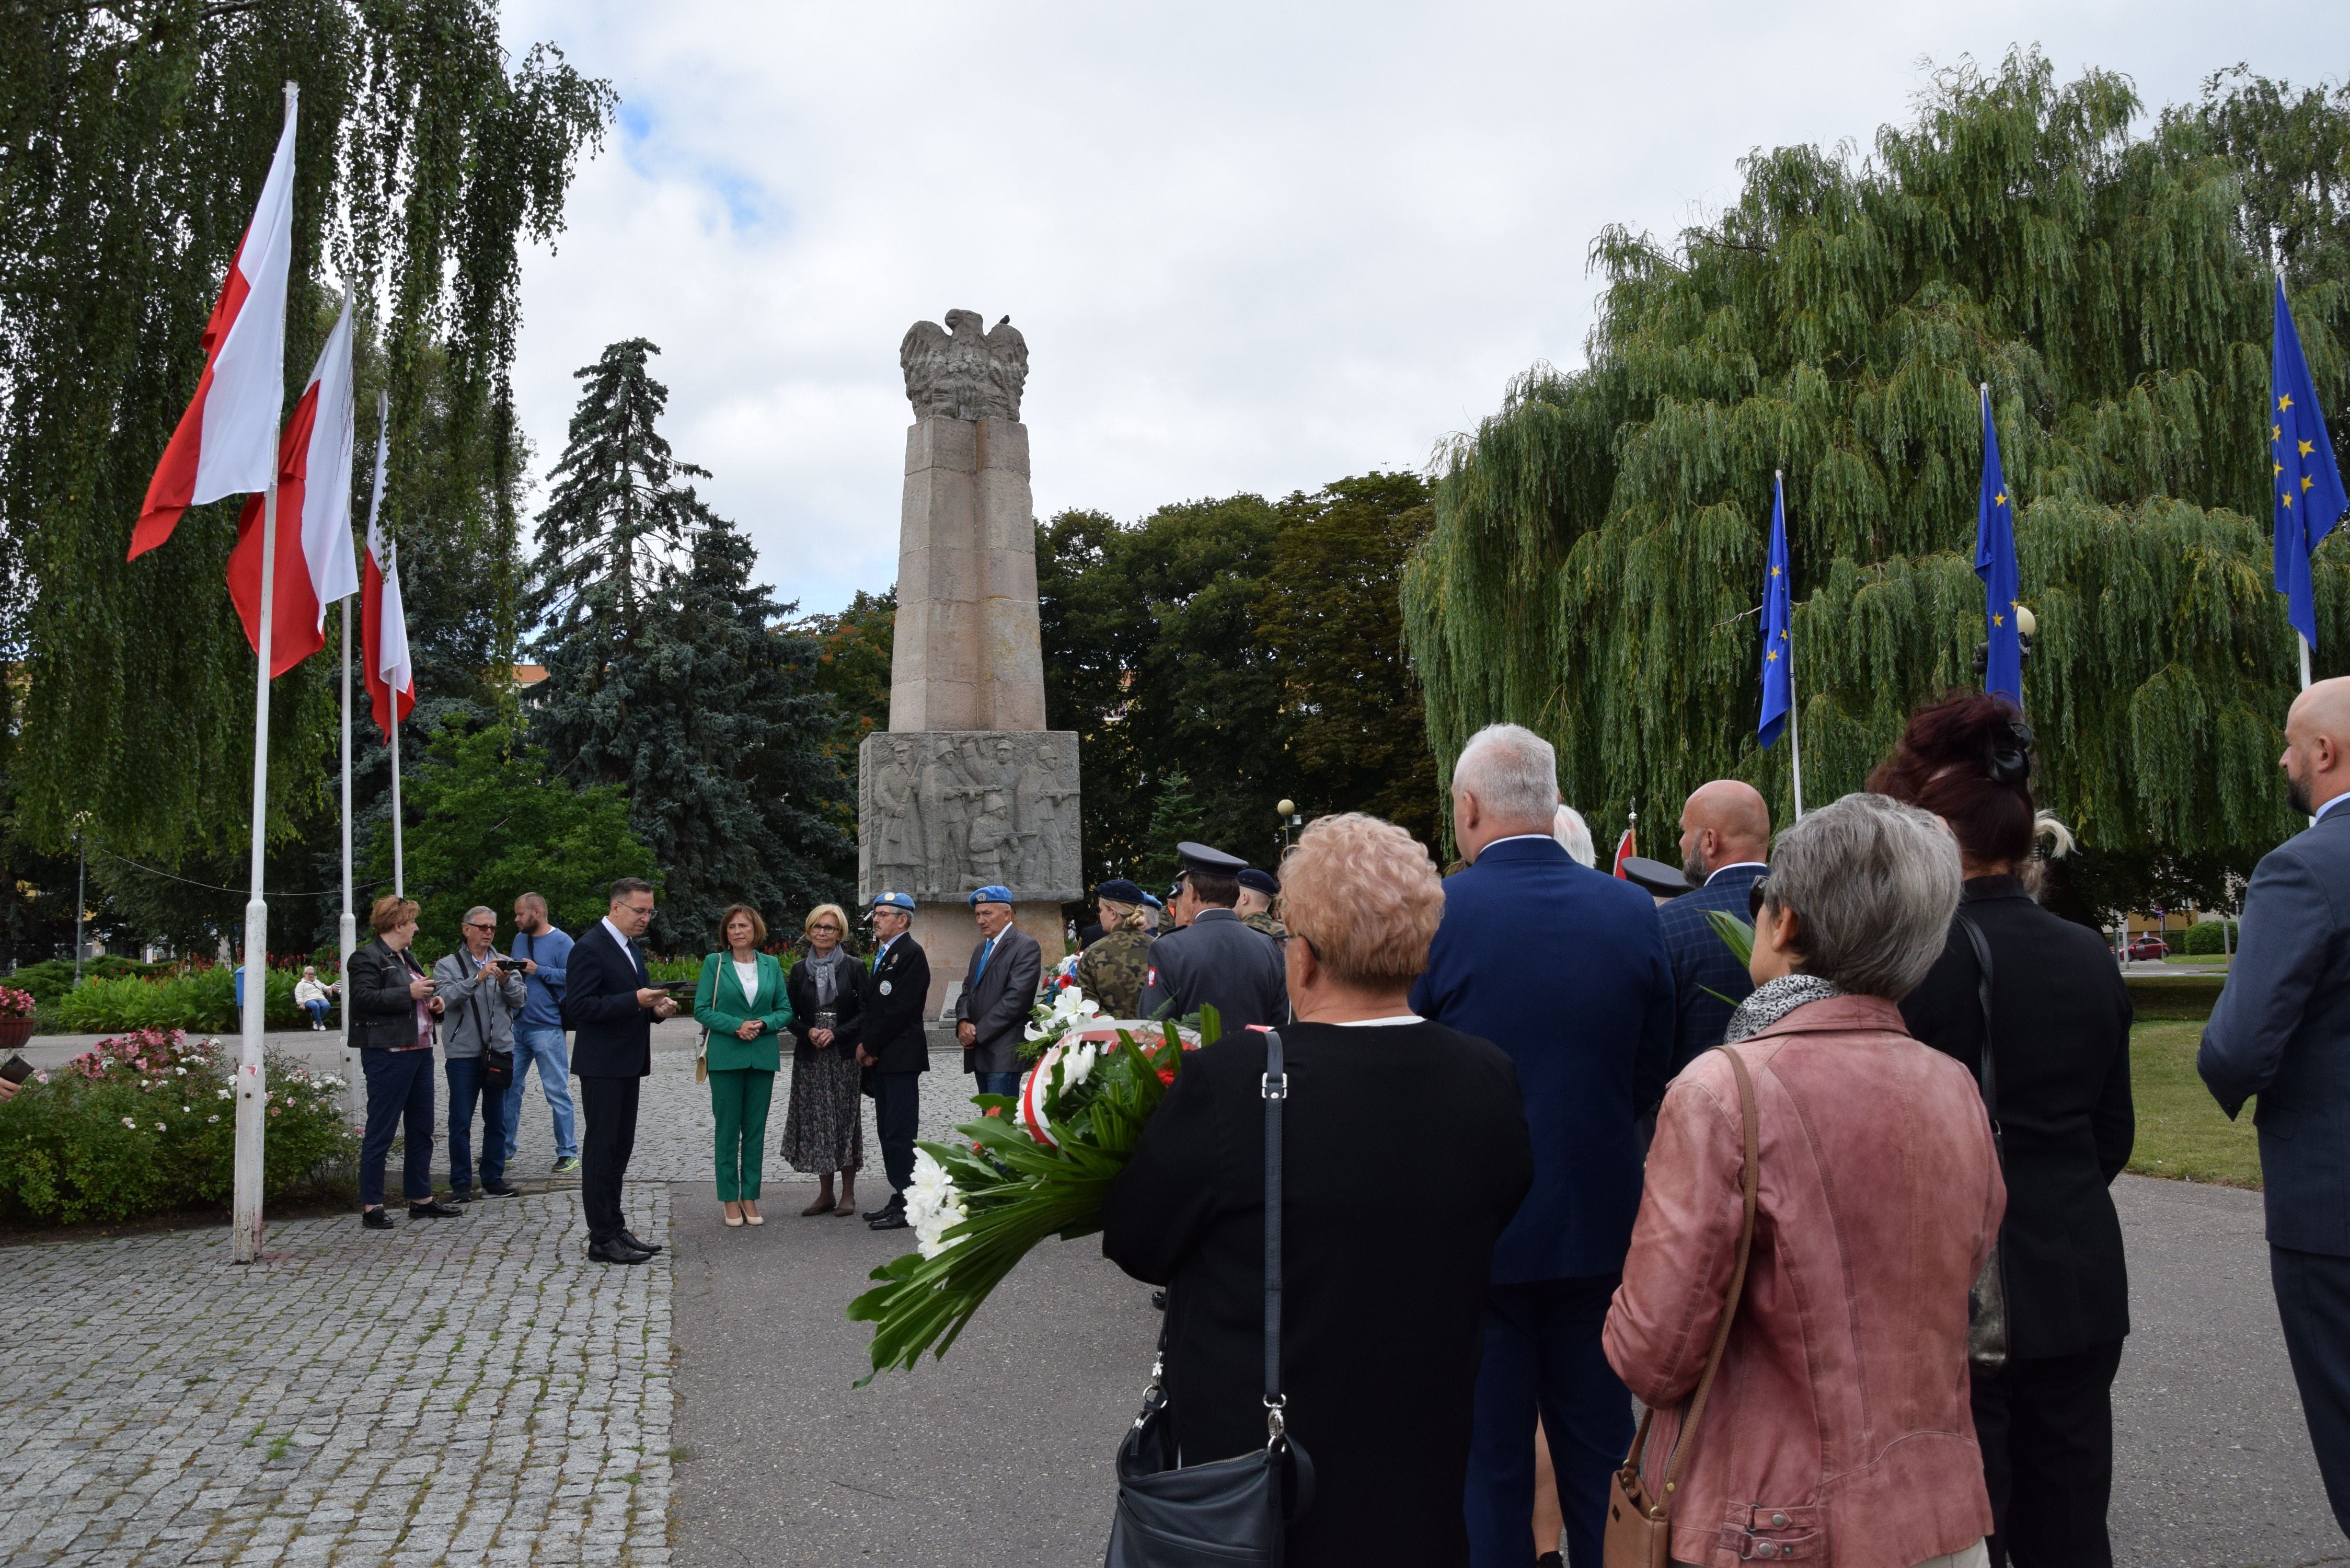 delegacje stoją przed pomnikiem, prezydent przemawia, w tle pomnik, po lewej flagi Polski